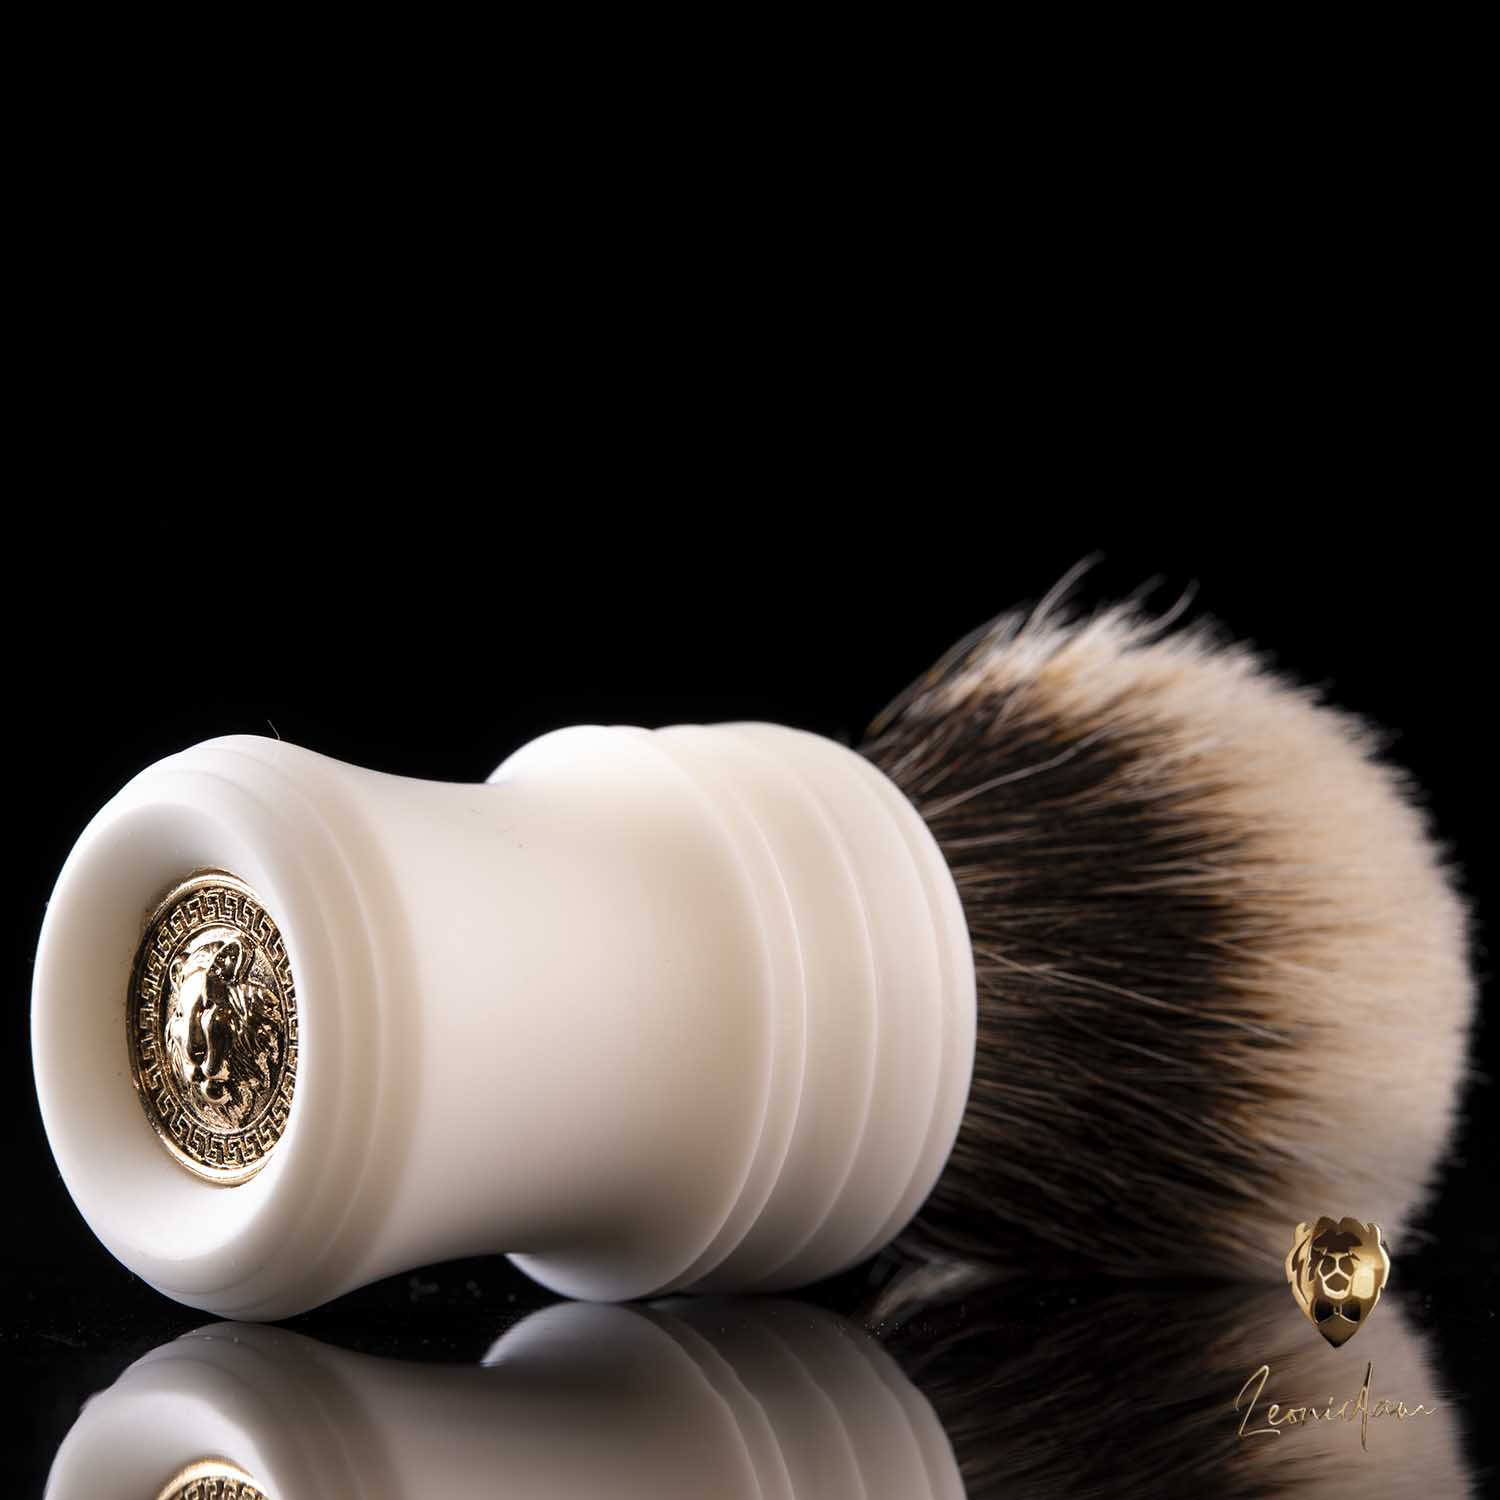 Shaving Brush "Fujisan" 28mm | 145€ - 195€